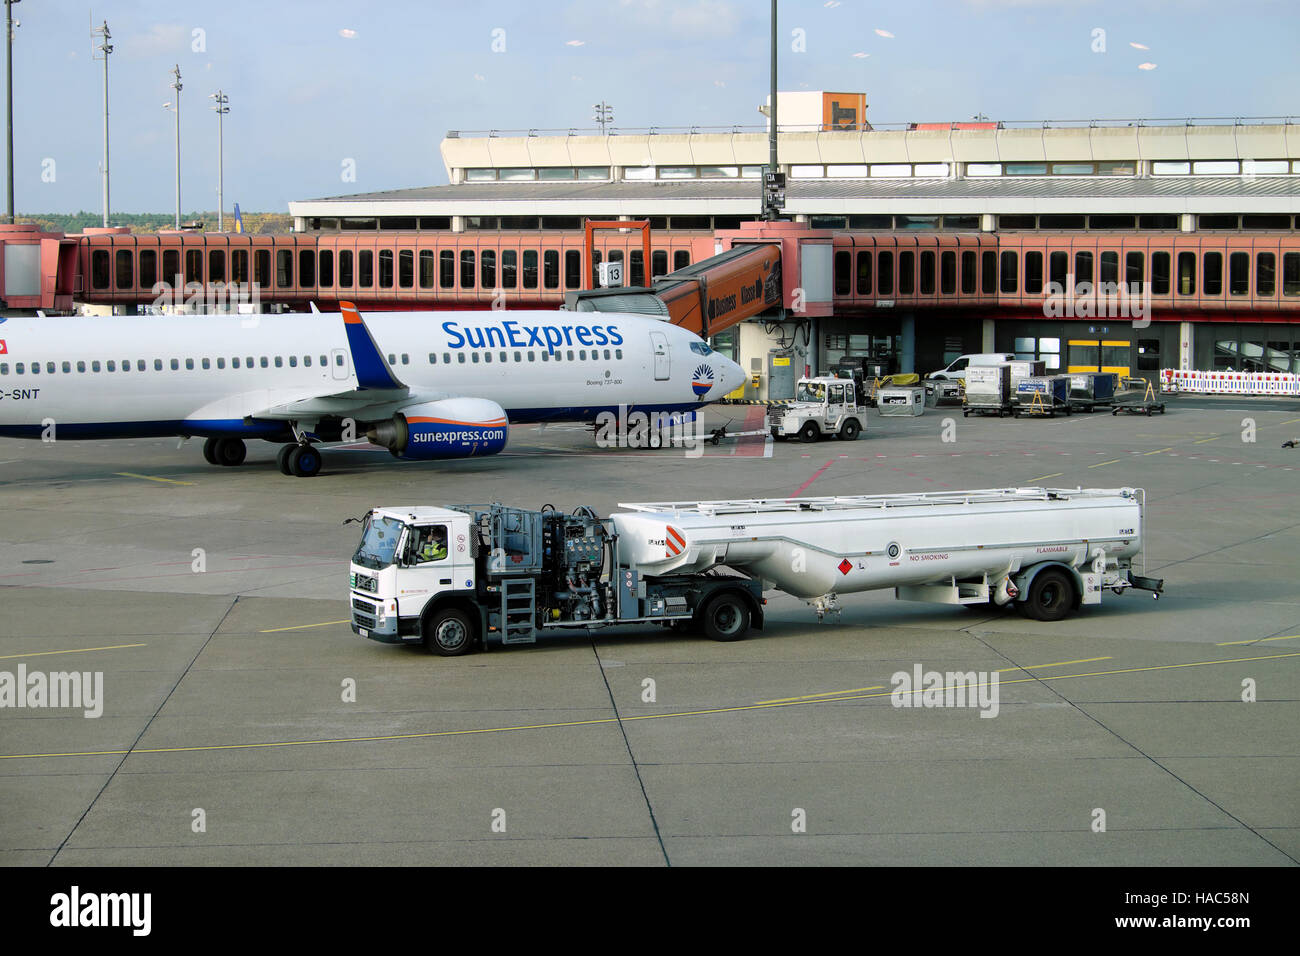 Avion SunExpress et camion-citerne de ravitaillement sur le tarmac de l'aéroport de Tegel à Berlin, Allemagne, Europe UE KATHY DEWITT Banque D'Images